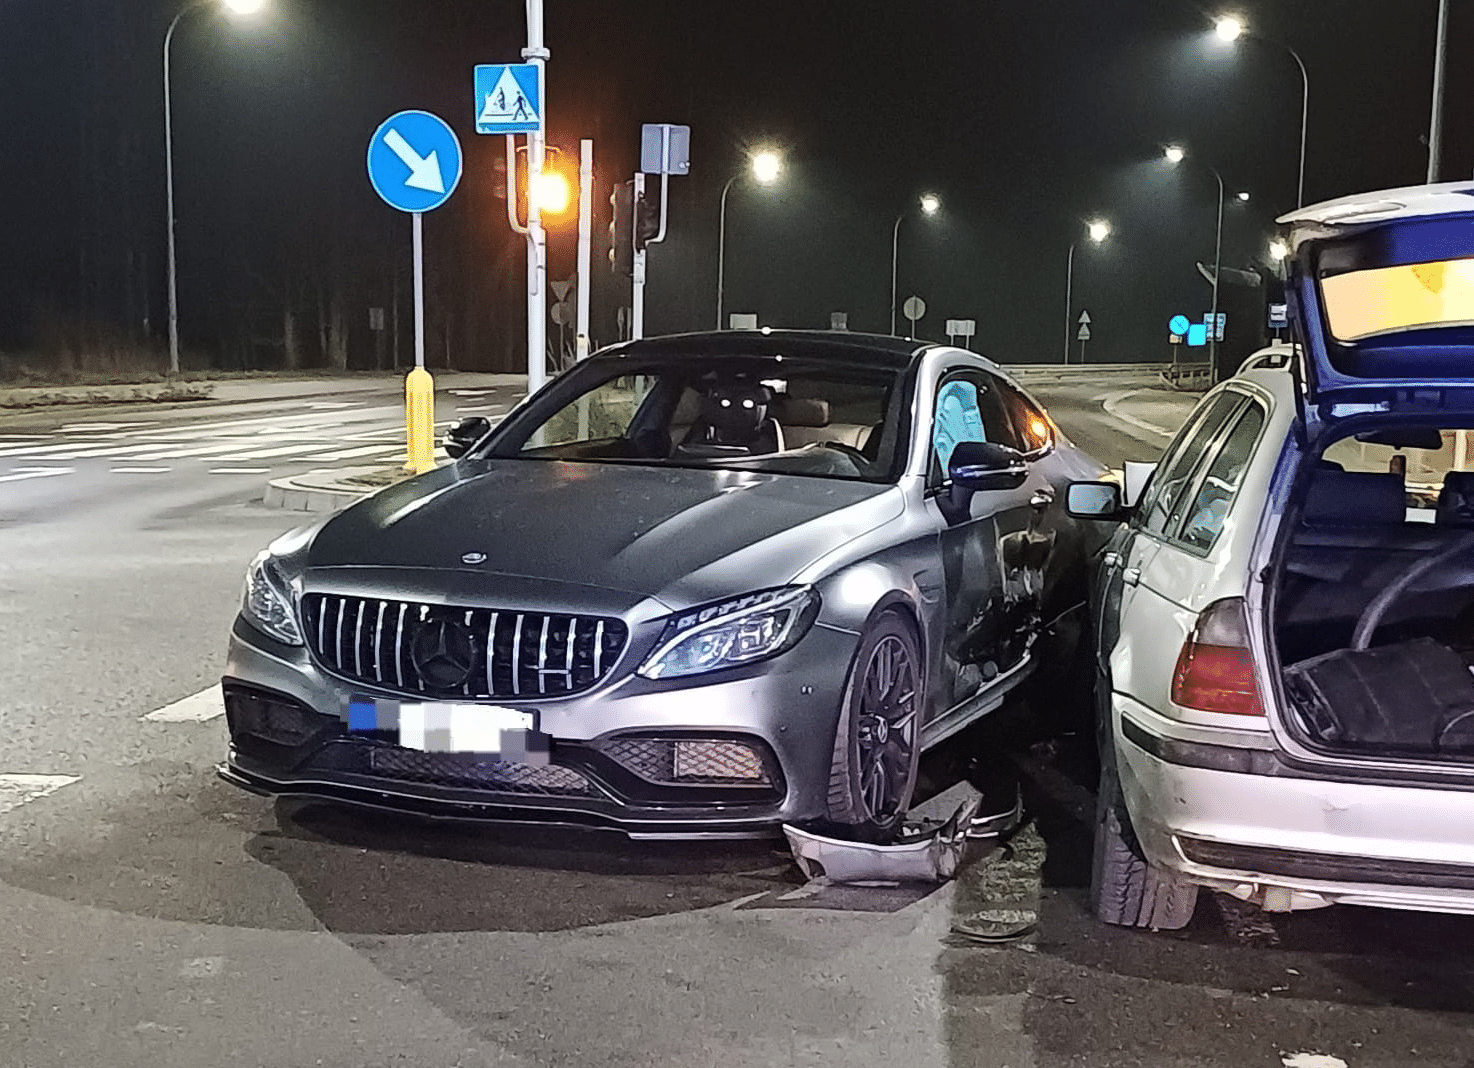 26-latka Mercedesem spowodowała kolizję. Nikt się nie spodziewał kto jechał BMW ruch drogowy Olsztyn, Wiadomości, zShowcase